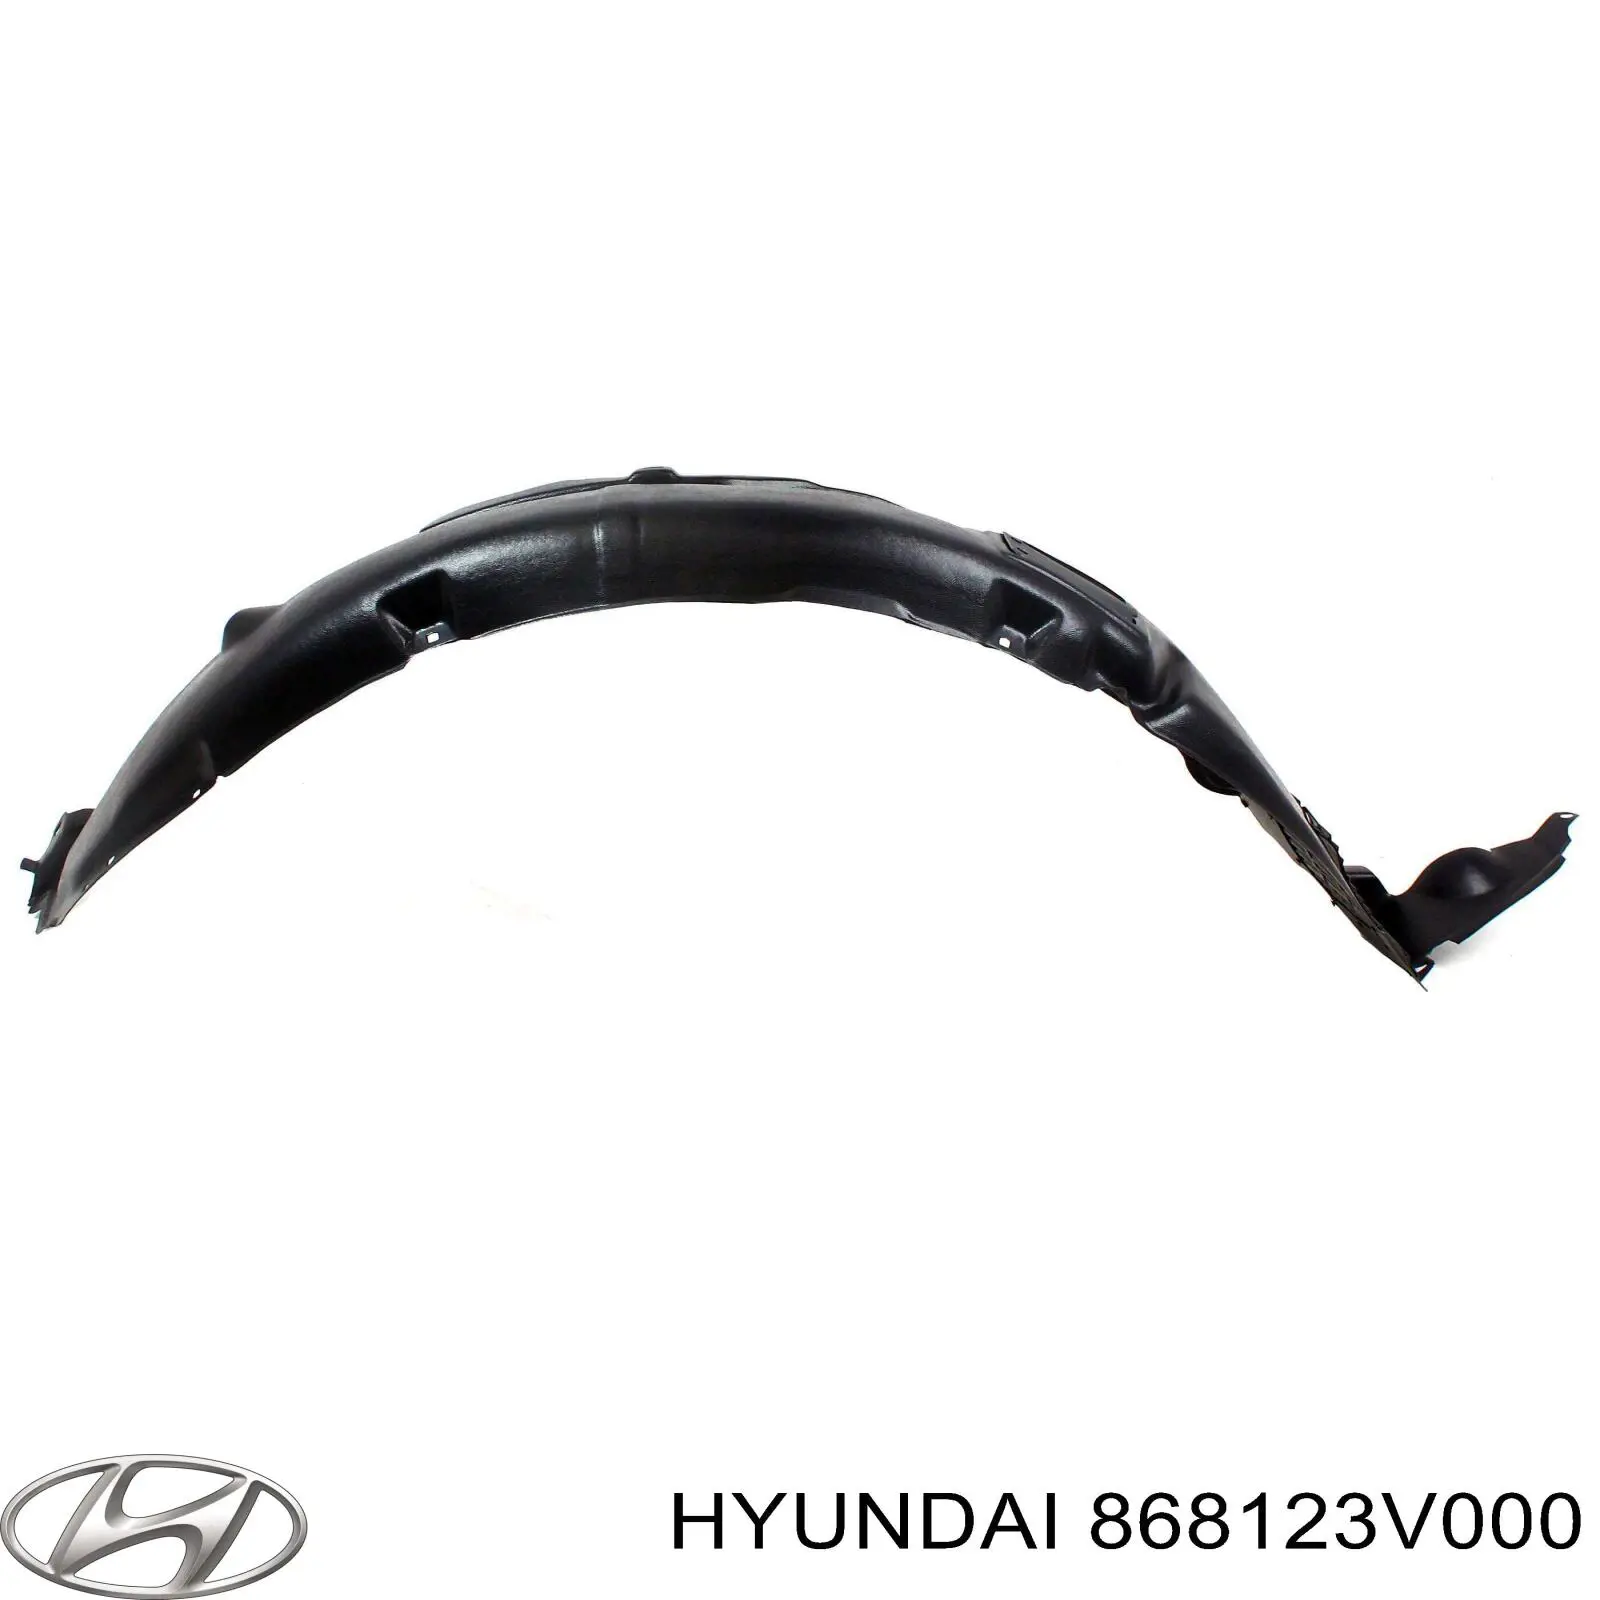 868123V000 Hyundai/Kia guardabarros interior, aleta delantera, derecho